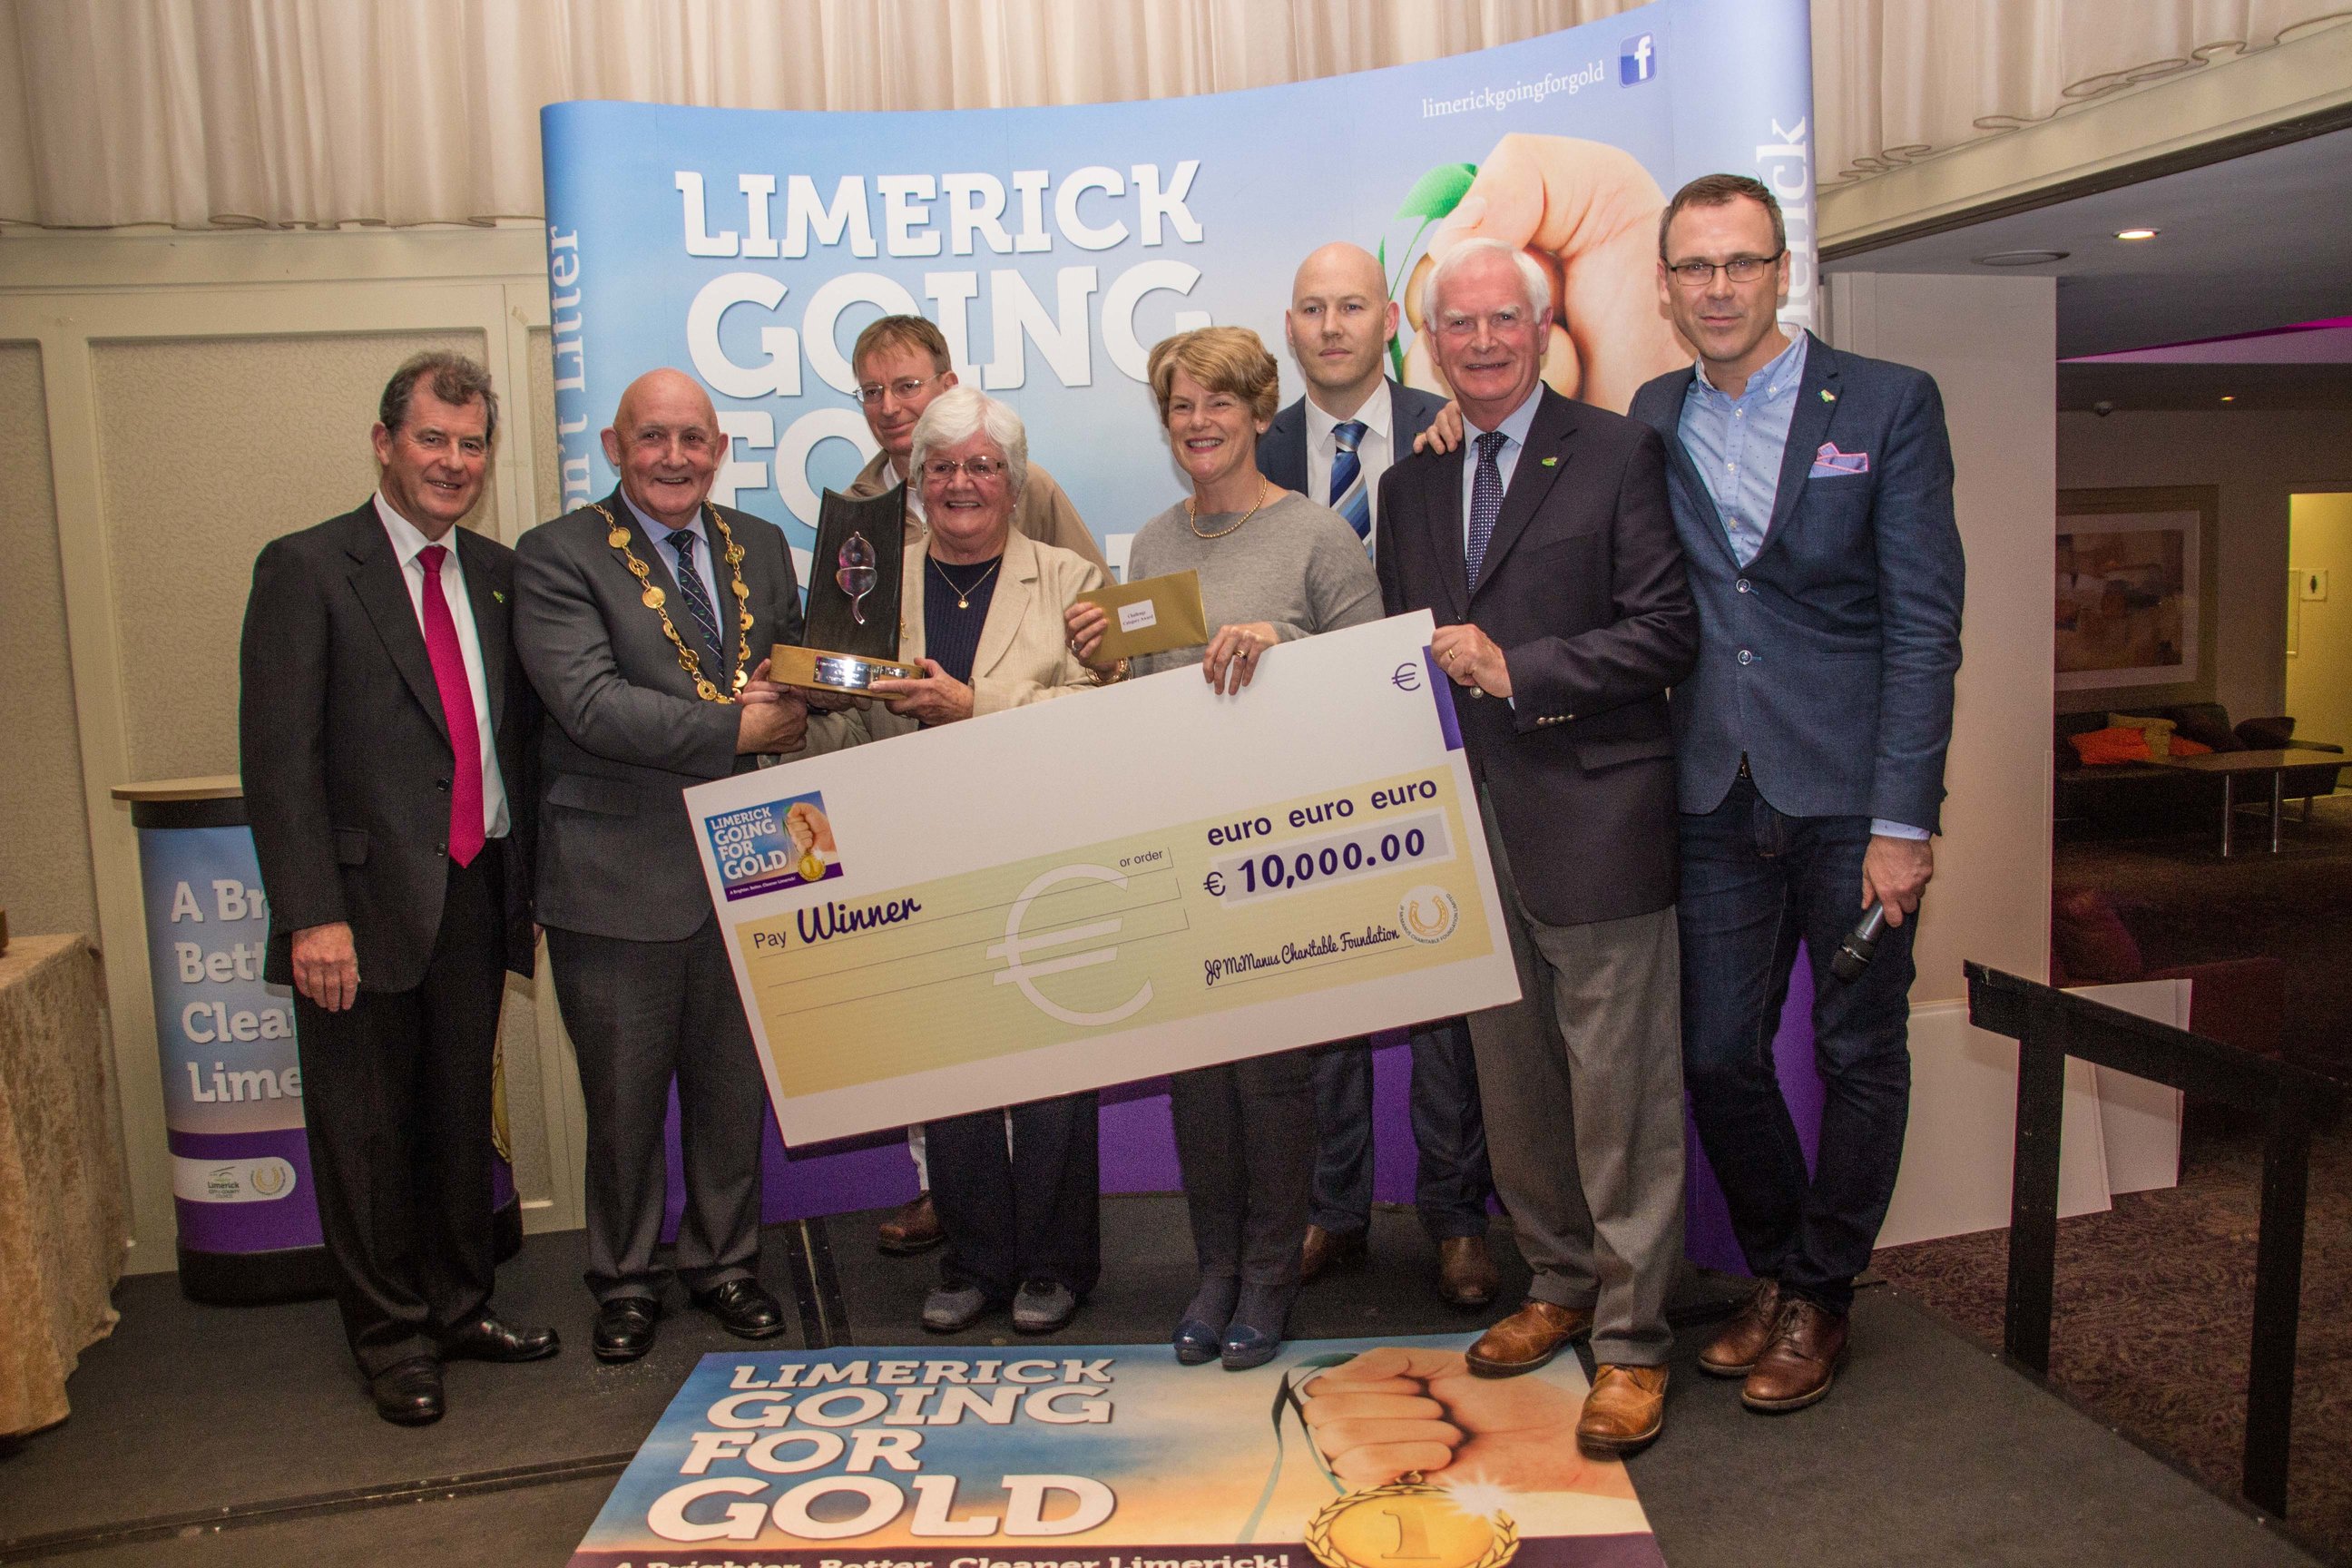 Limerick Going for Gold 2016 winner